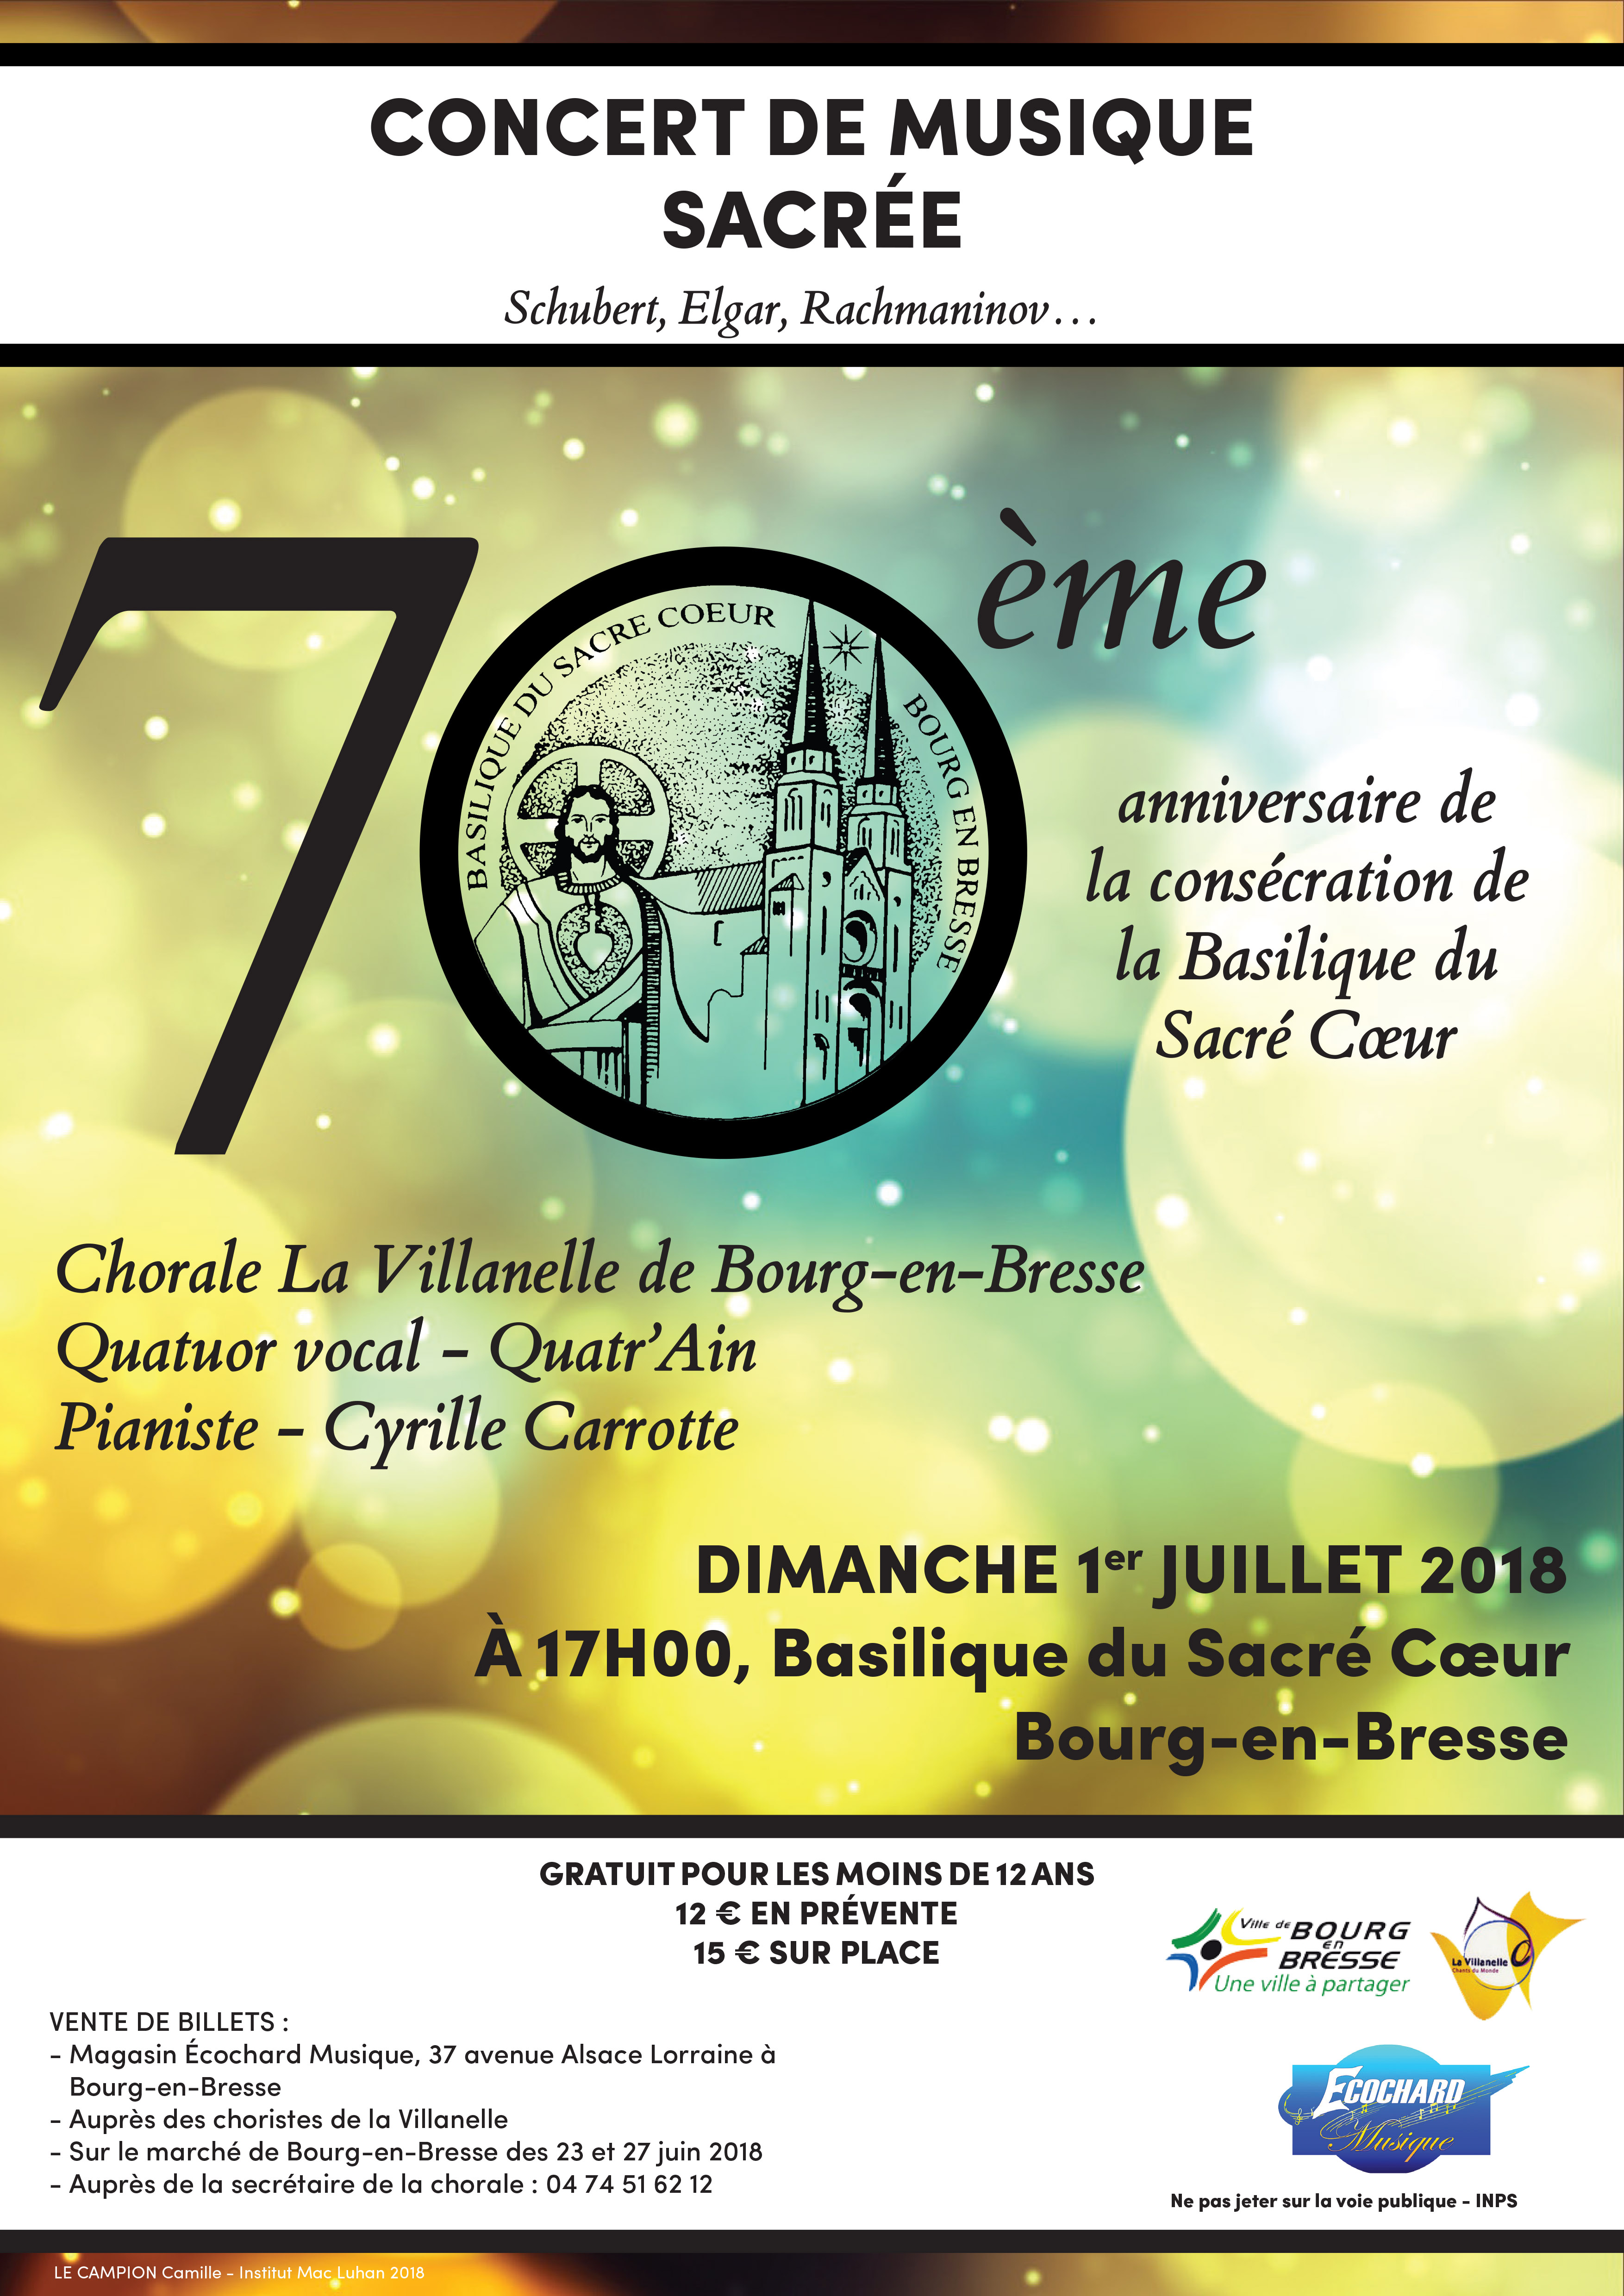 Concert de Musique Sacrée le 1er juillet 2018 à Bourg-en-Bresse (01) à l’occasion des 70 ans de la consécration de la Basilique